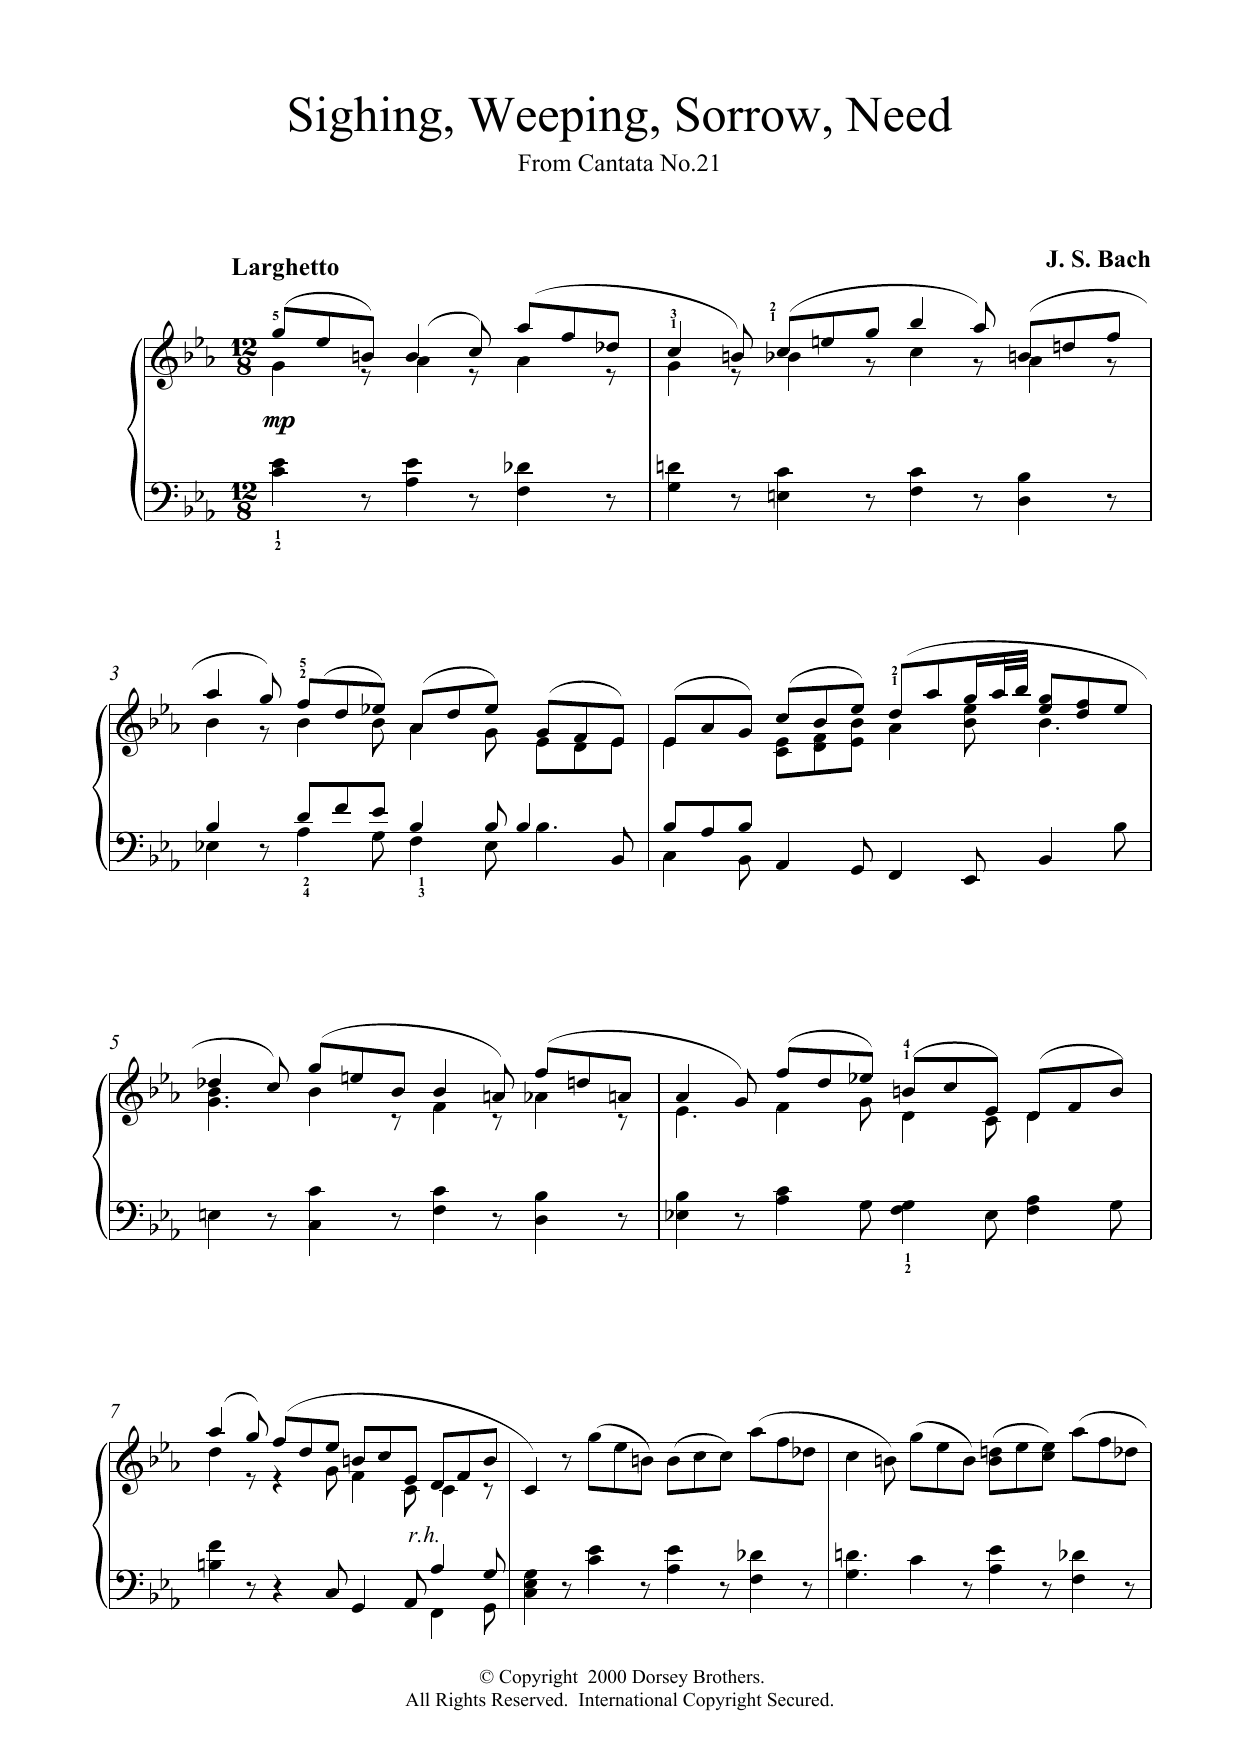 Johann Sebastian Bach Sighing, Weeping, Sorrow, Need sheet music notes and chords. Download Printable PDF.